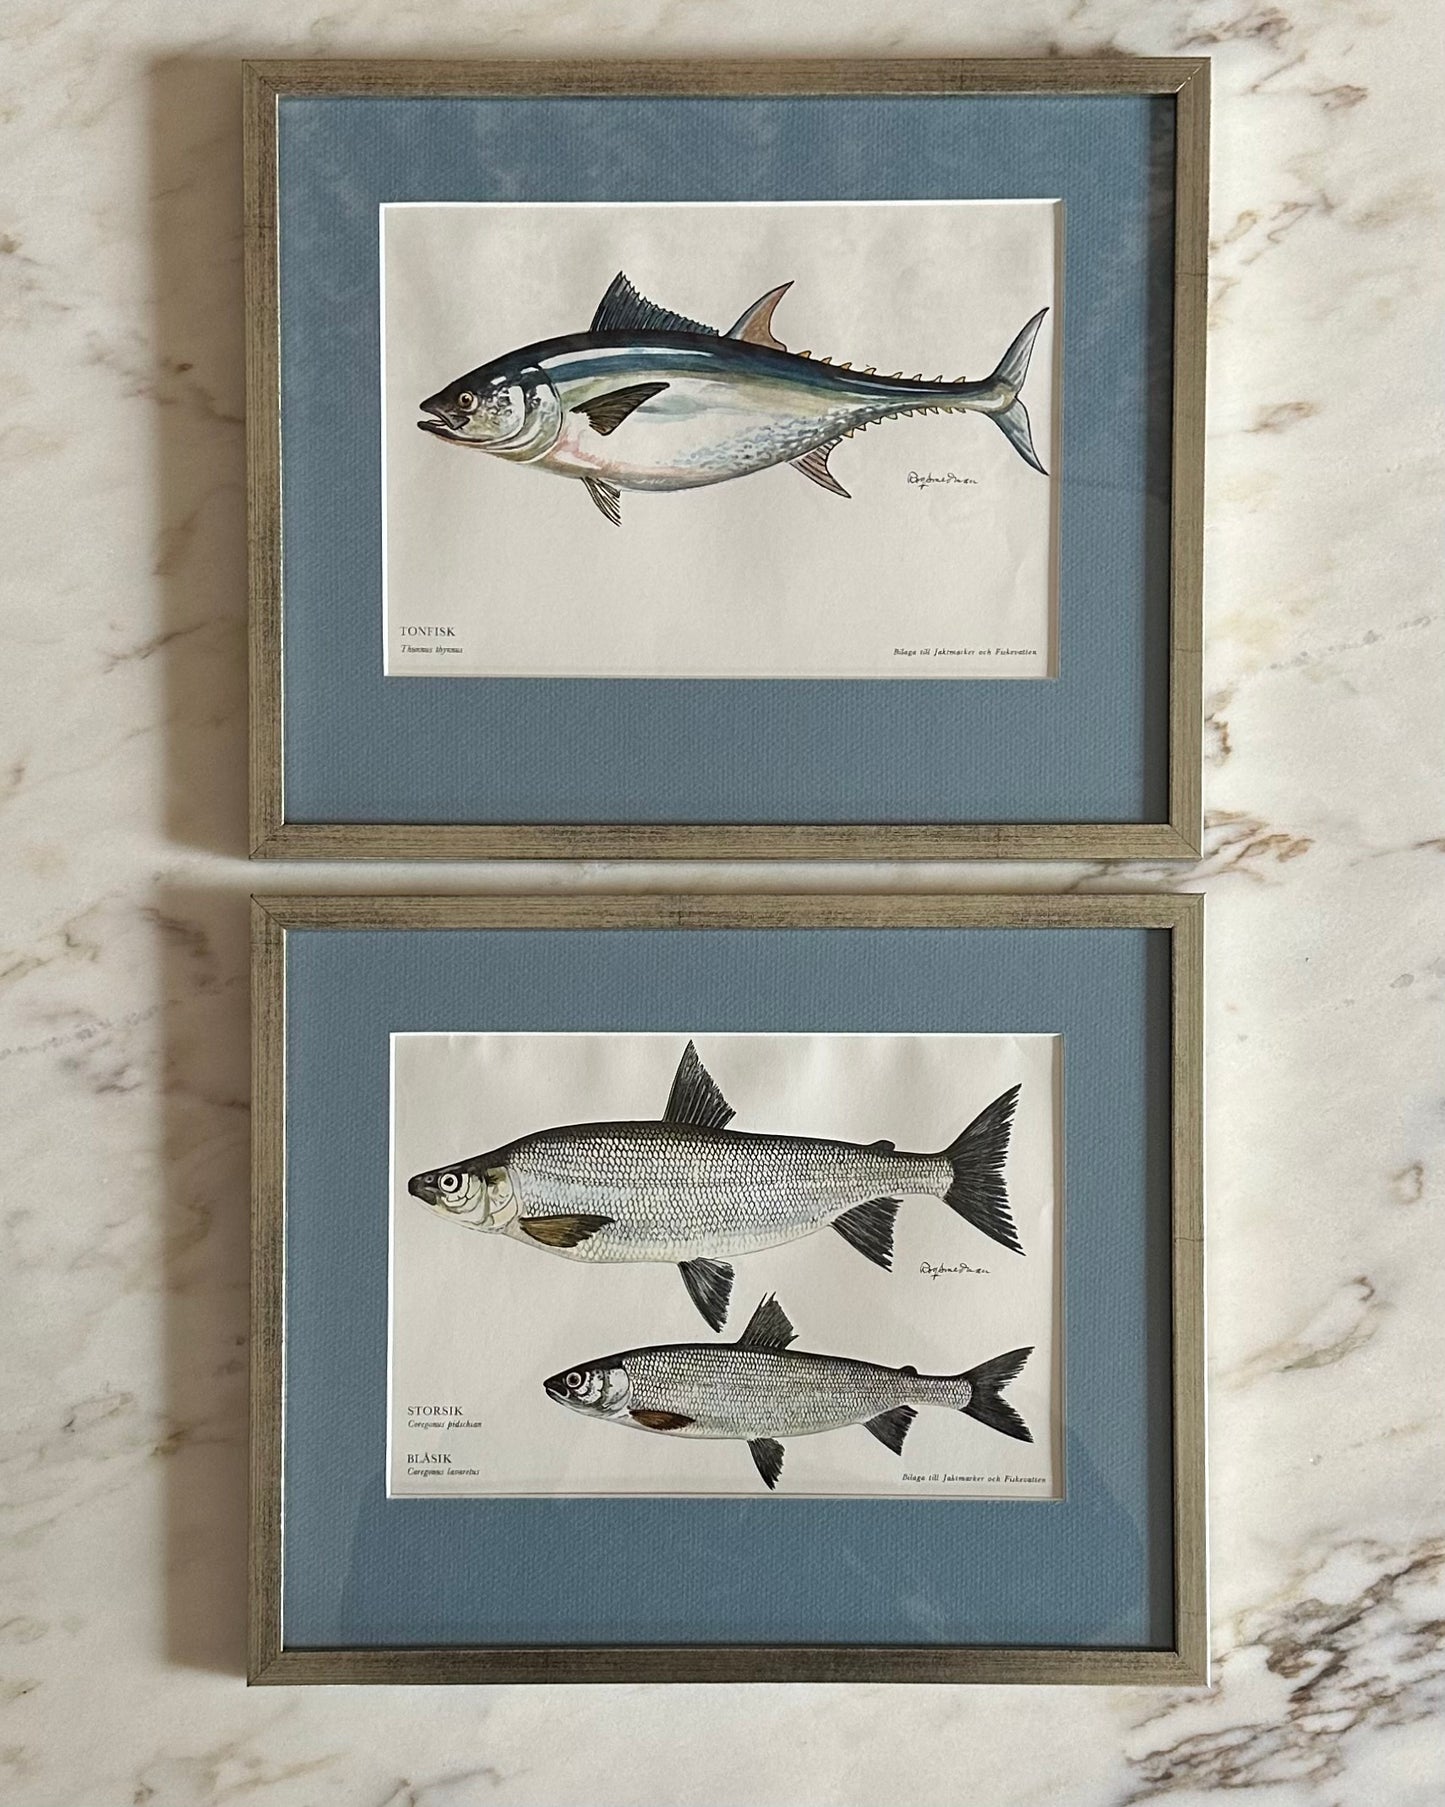 Framed Vintage Fish Print - "Tonfisk"